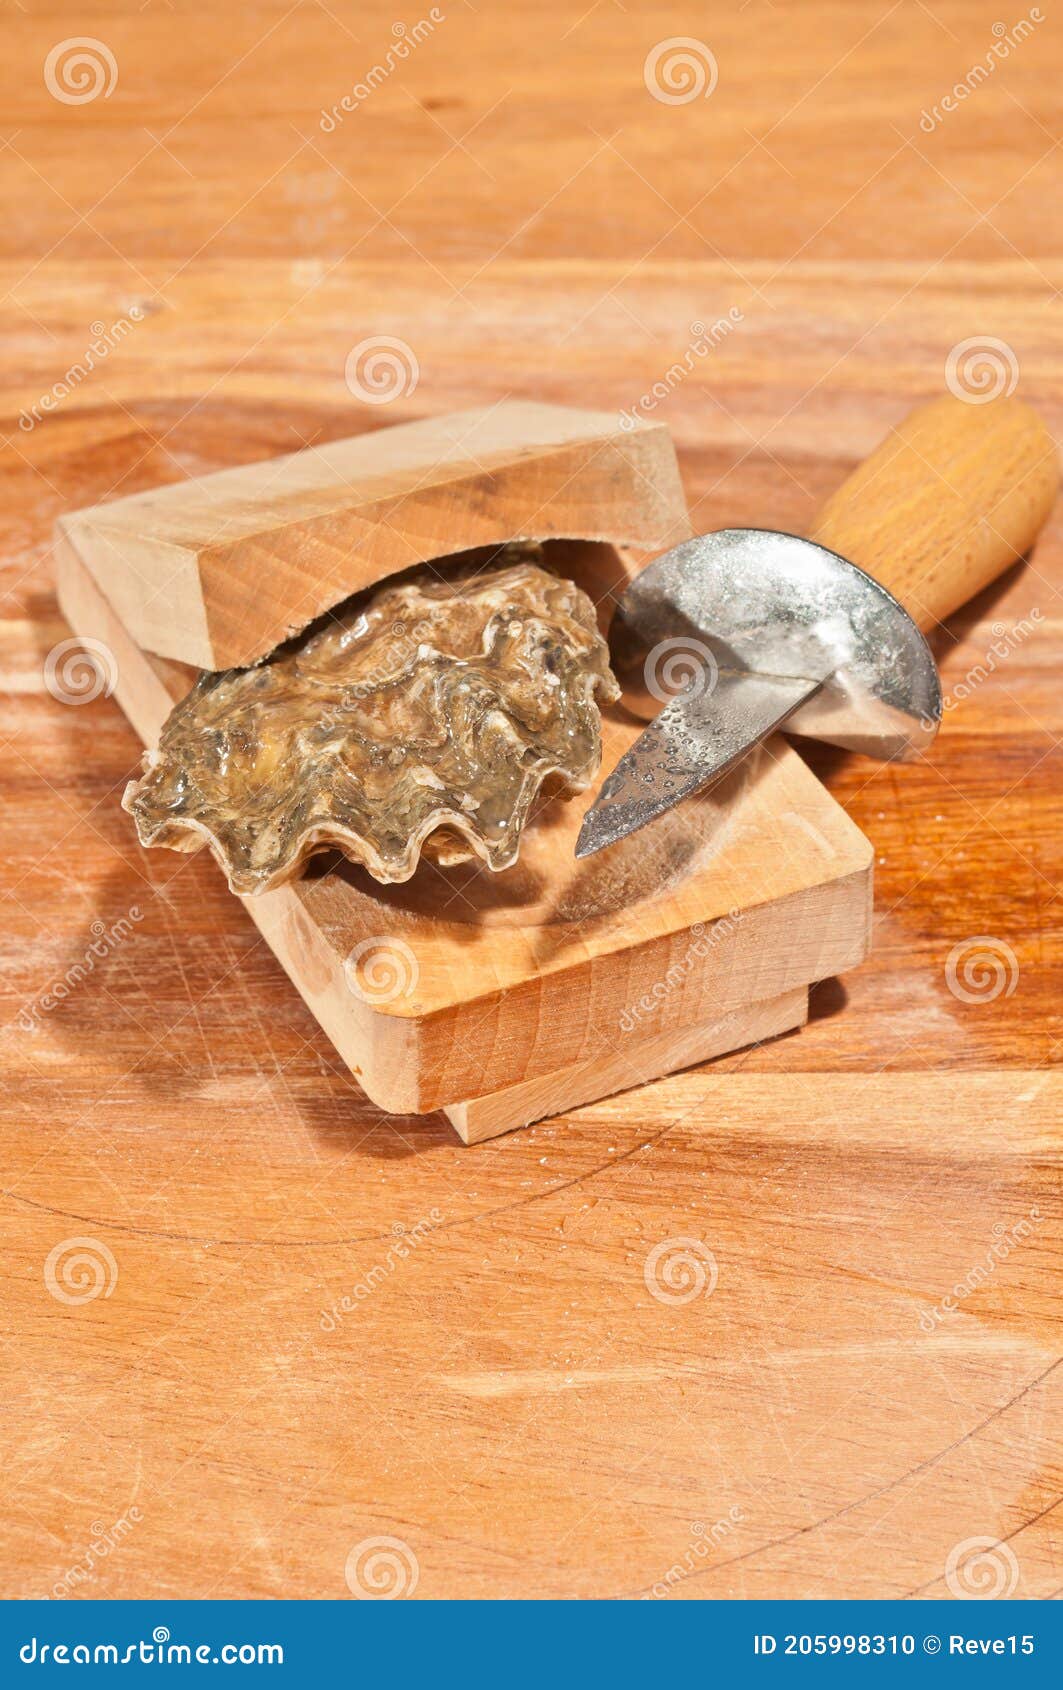 Planche d'écaillage à huîtres - Planche en bois